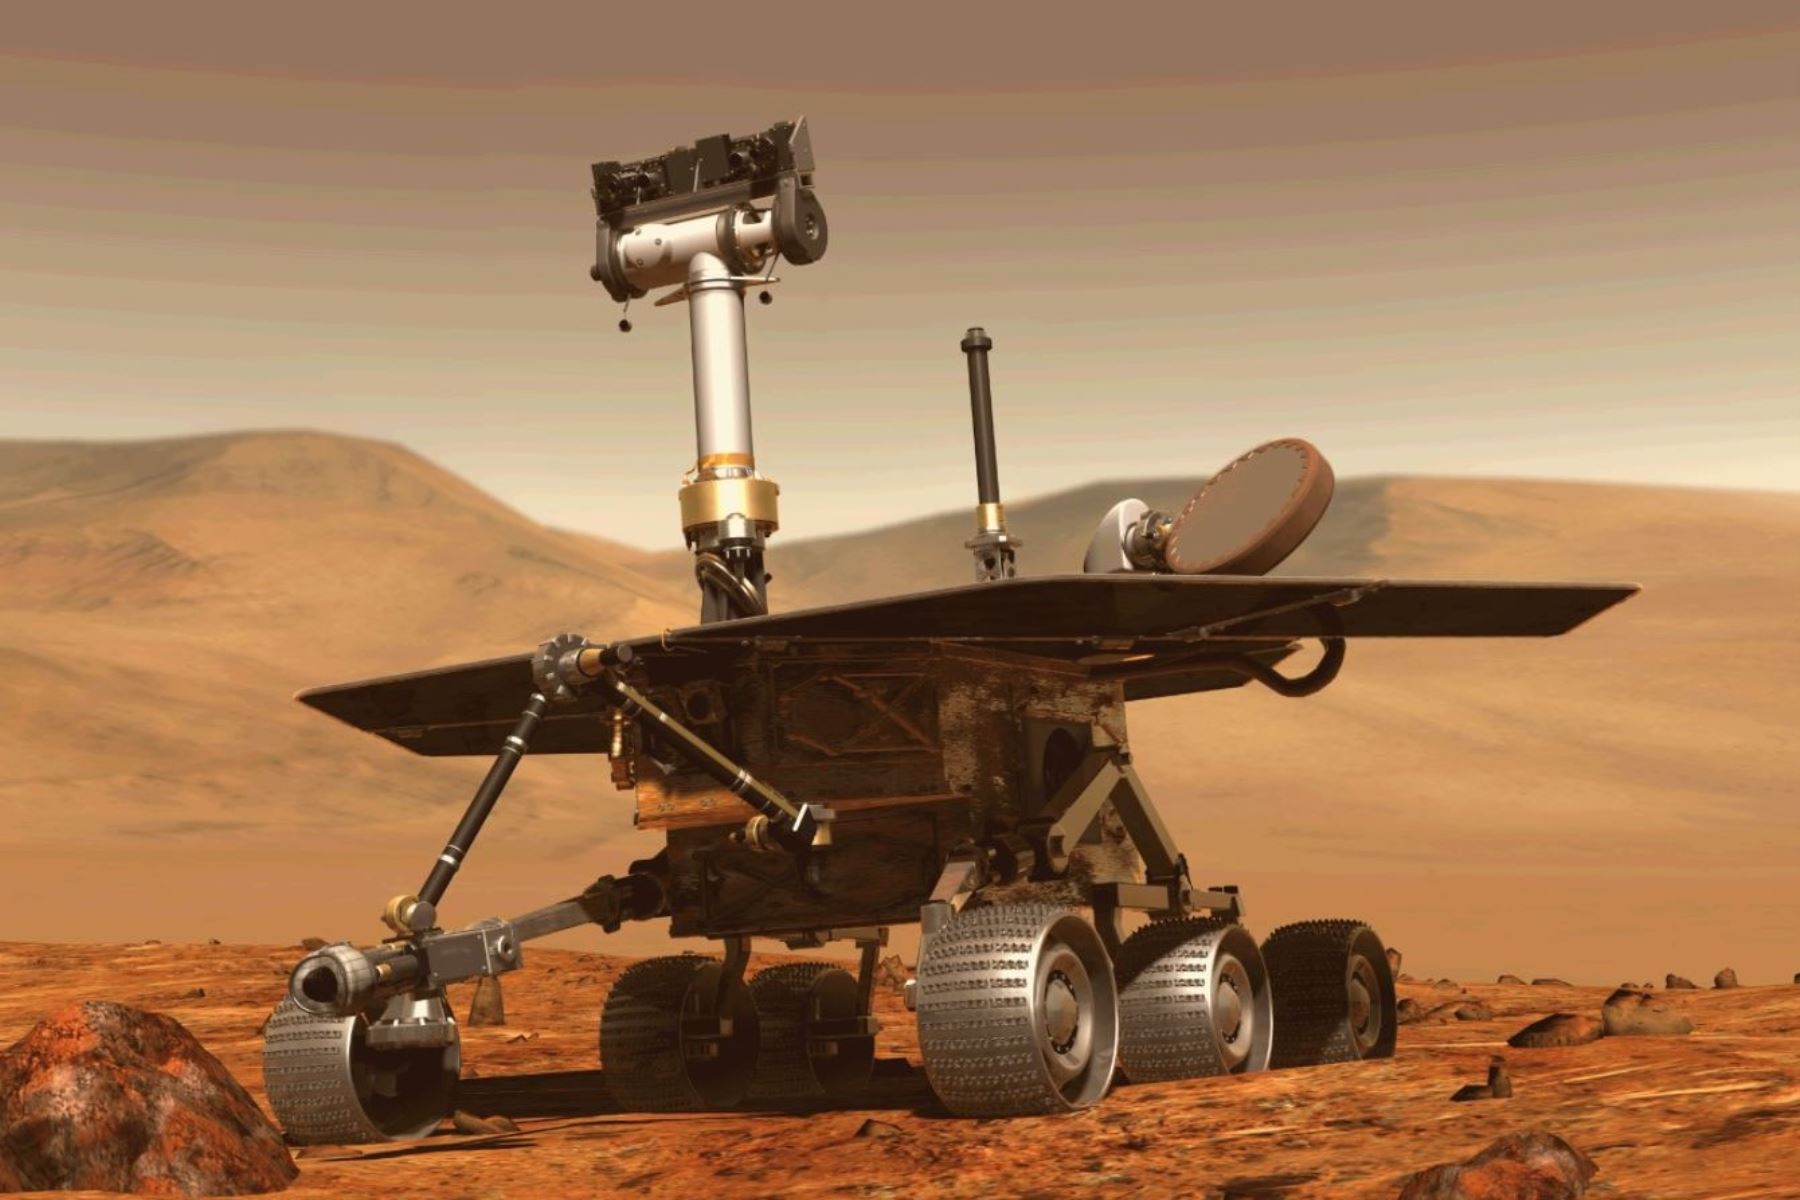 Imagen generada por computadora y archivo obtenida el 31 de agosto de 2018 muestra el rover Opportunity de la NASA, del programa de exploración del planeta Marte. Foto: AFP